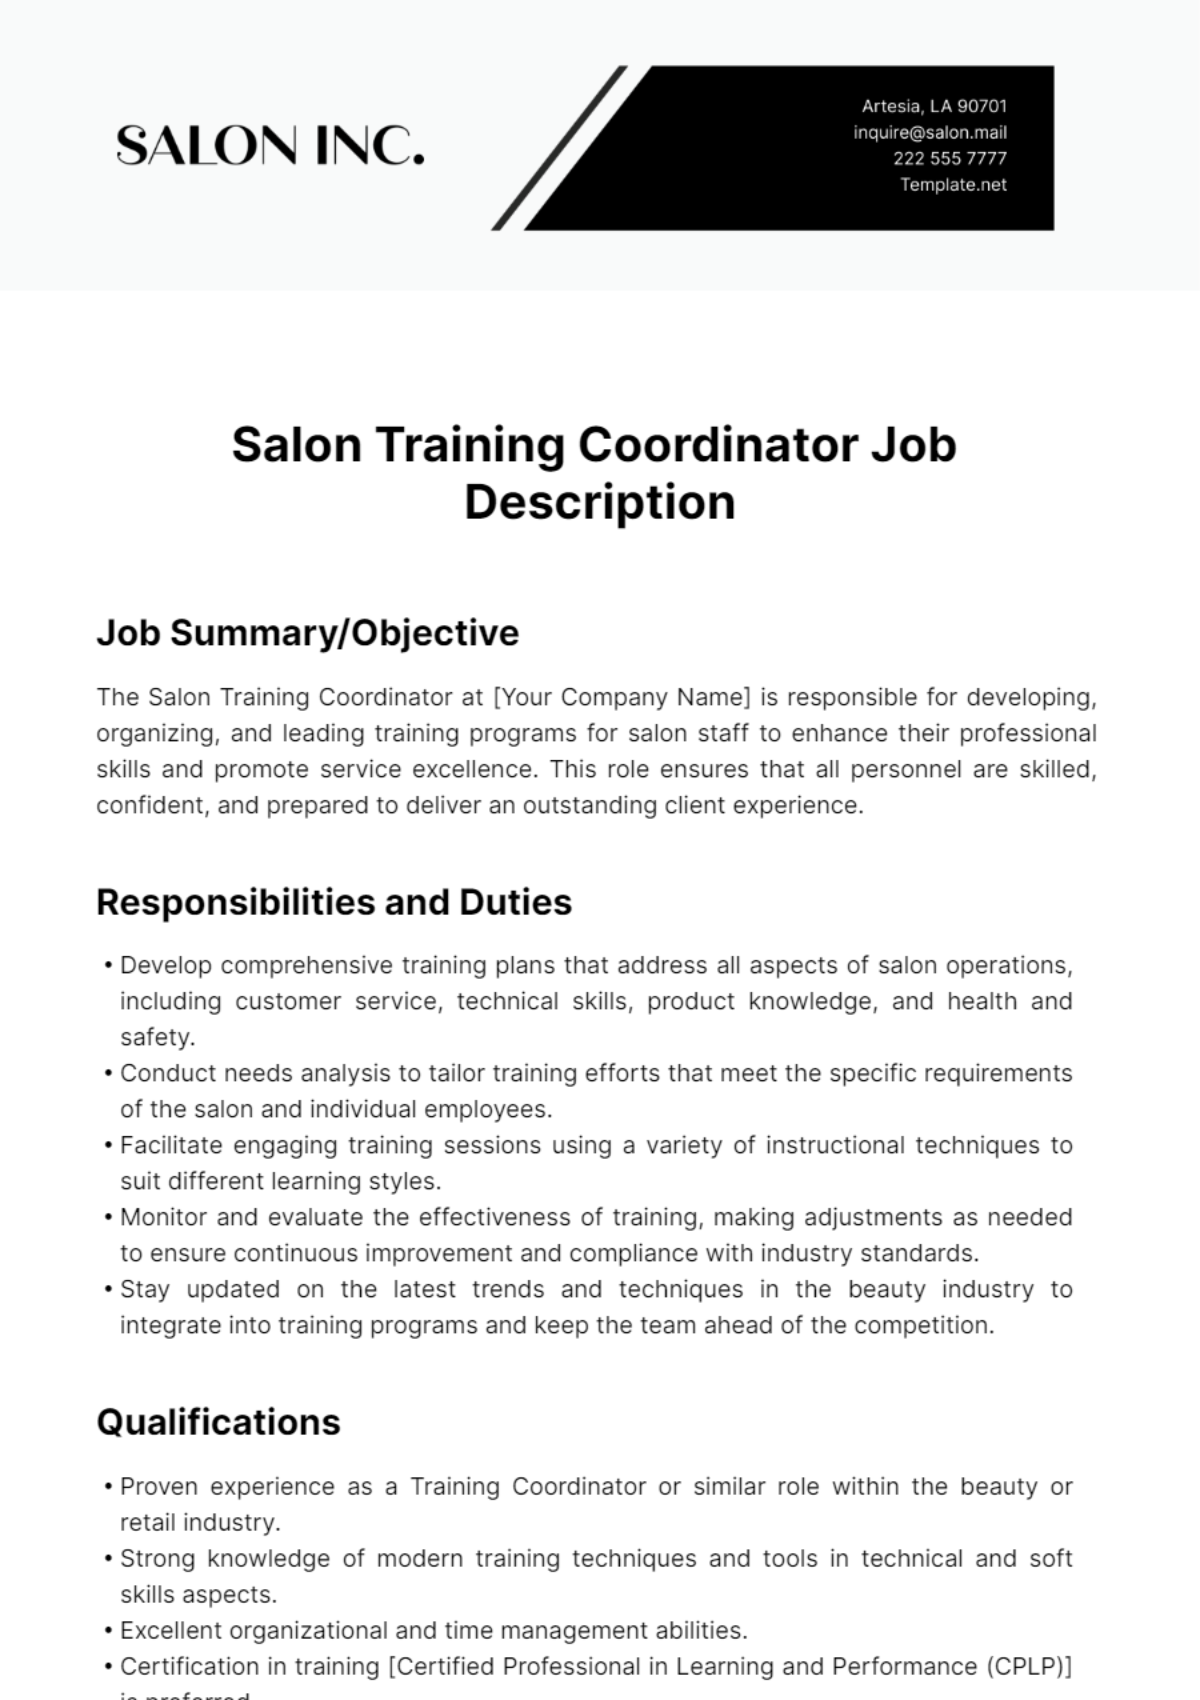 Salon Training Coordinator Job Description Template